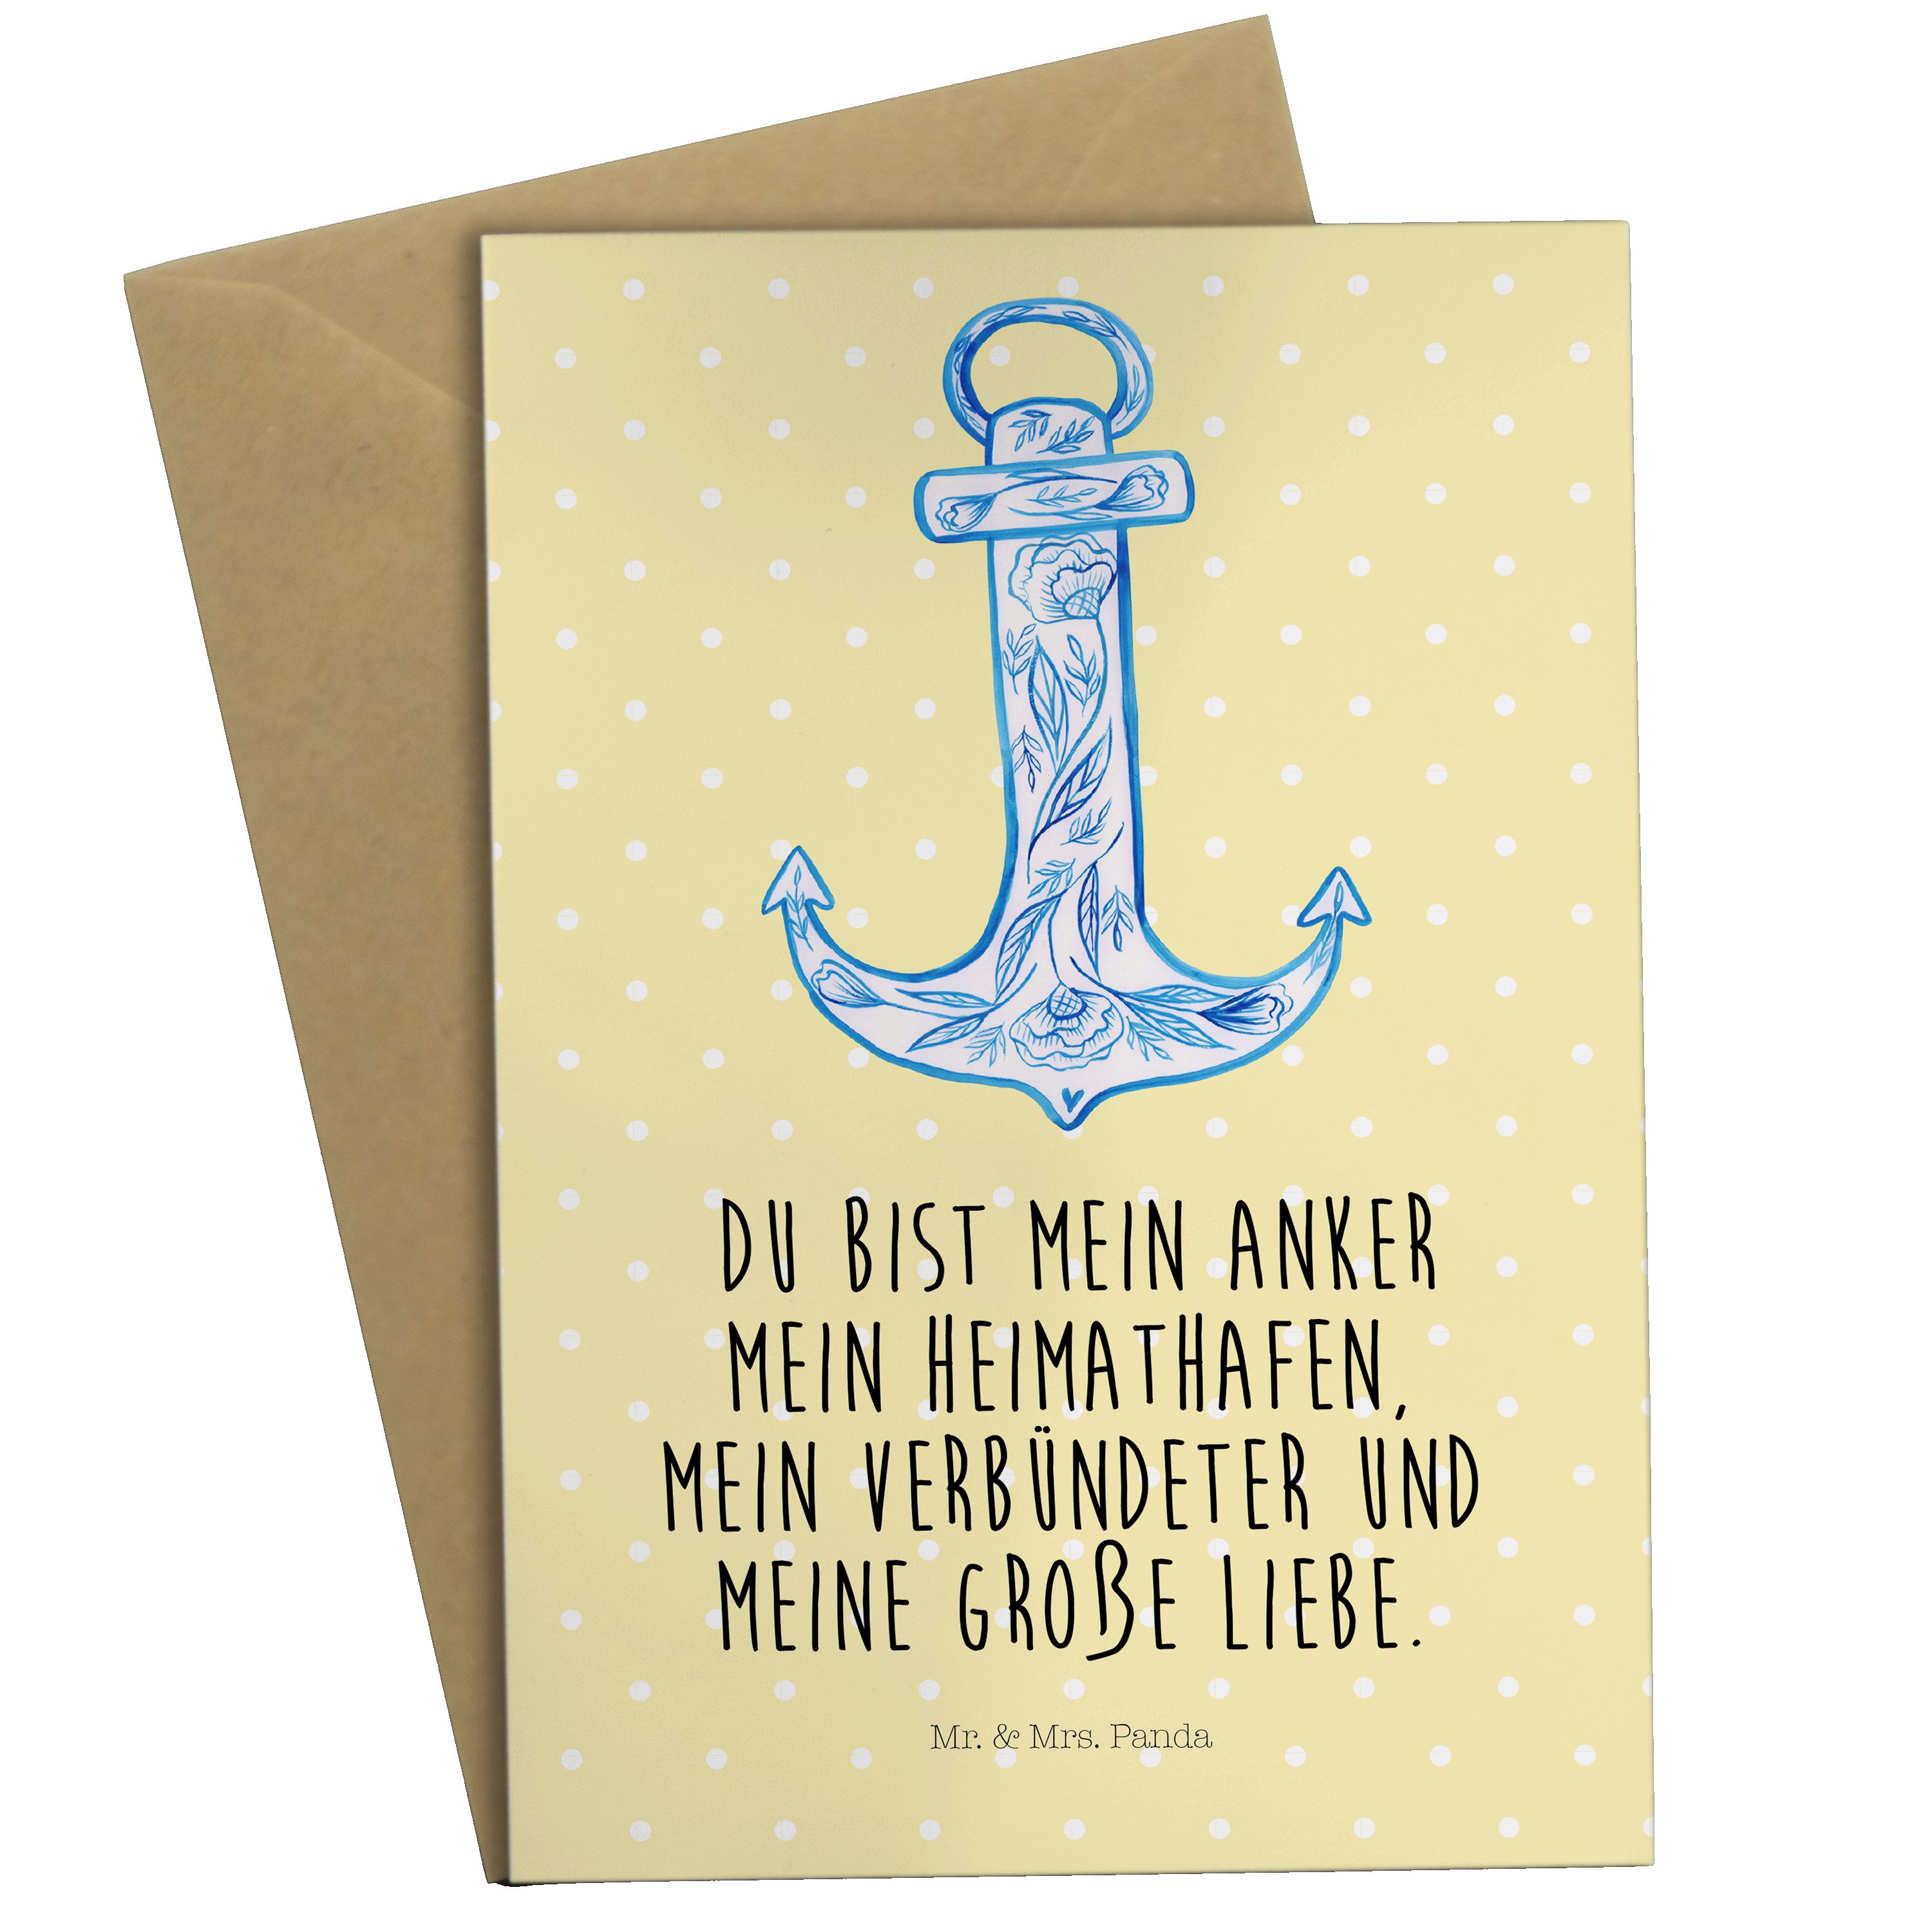 Mr. & Mrs. Panda Grußkarte Anker Blau - Gelb Pastell - Geschenk, Hochzeitskarte, lustige Sprüche